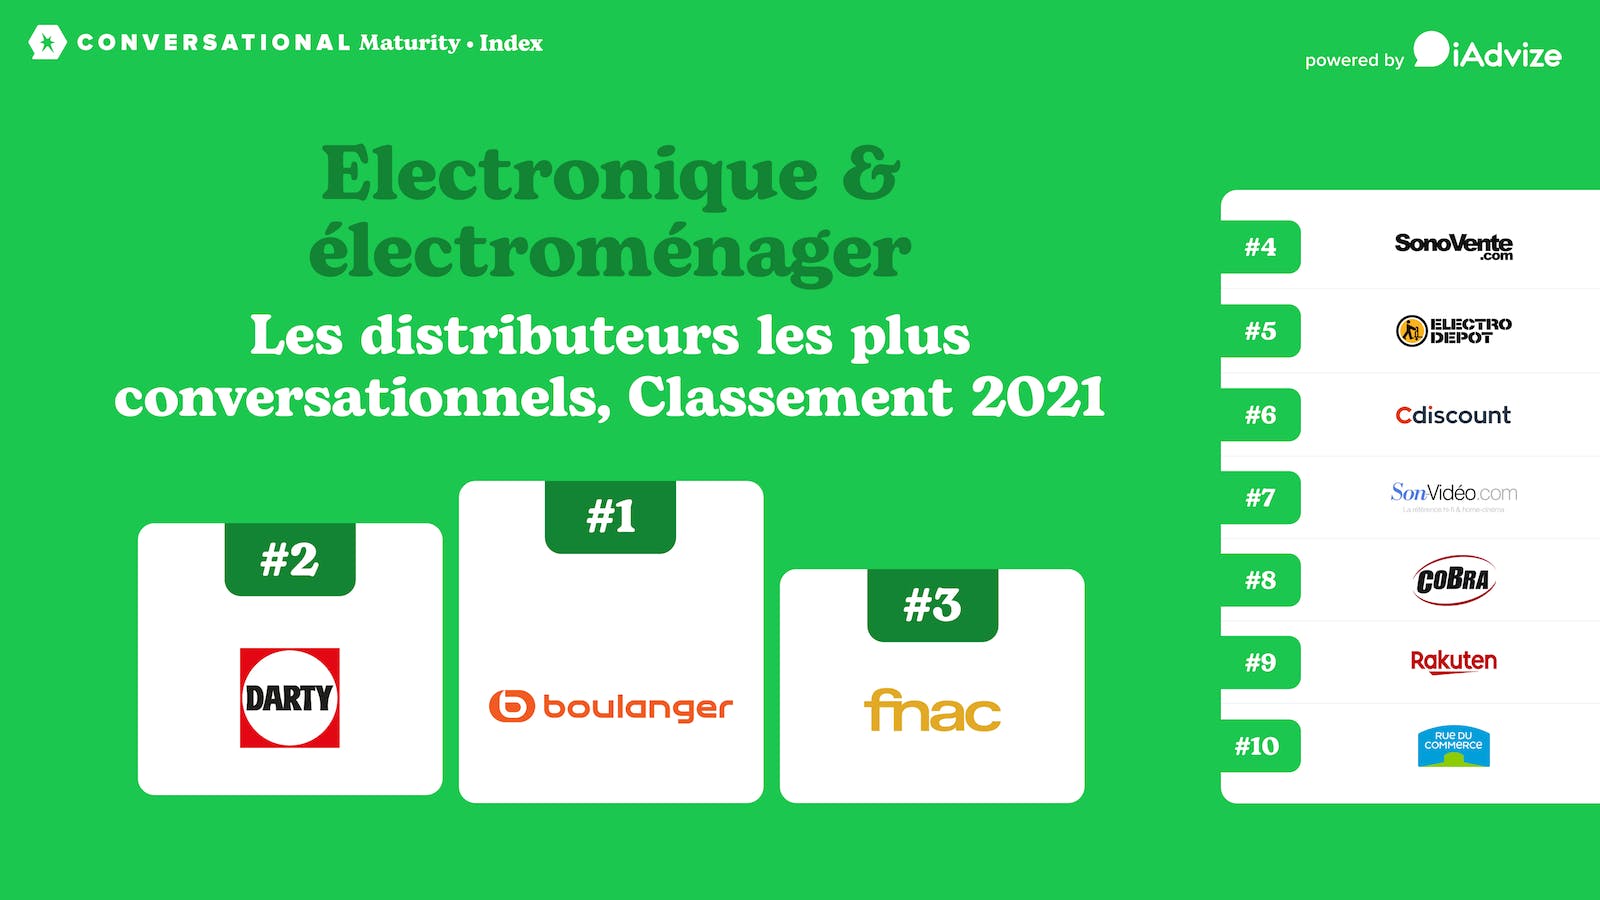 Read full post: Indice de Maturité Conversationnelle : classement 2021 des retailers d'électronique et d'électroménager en France